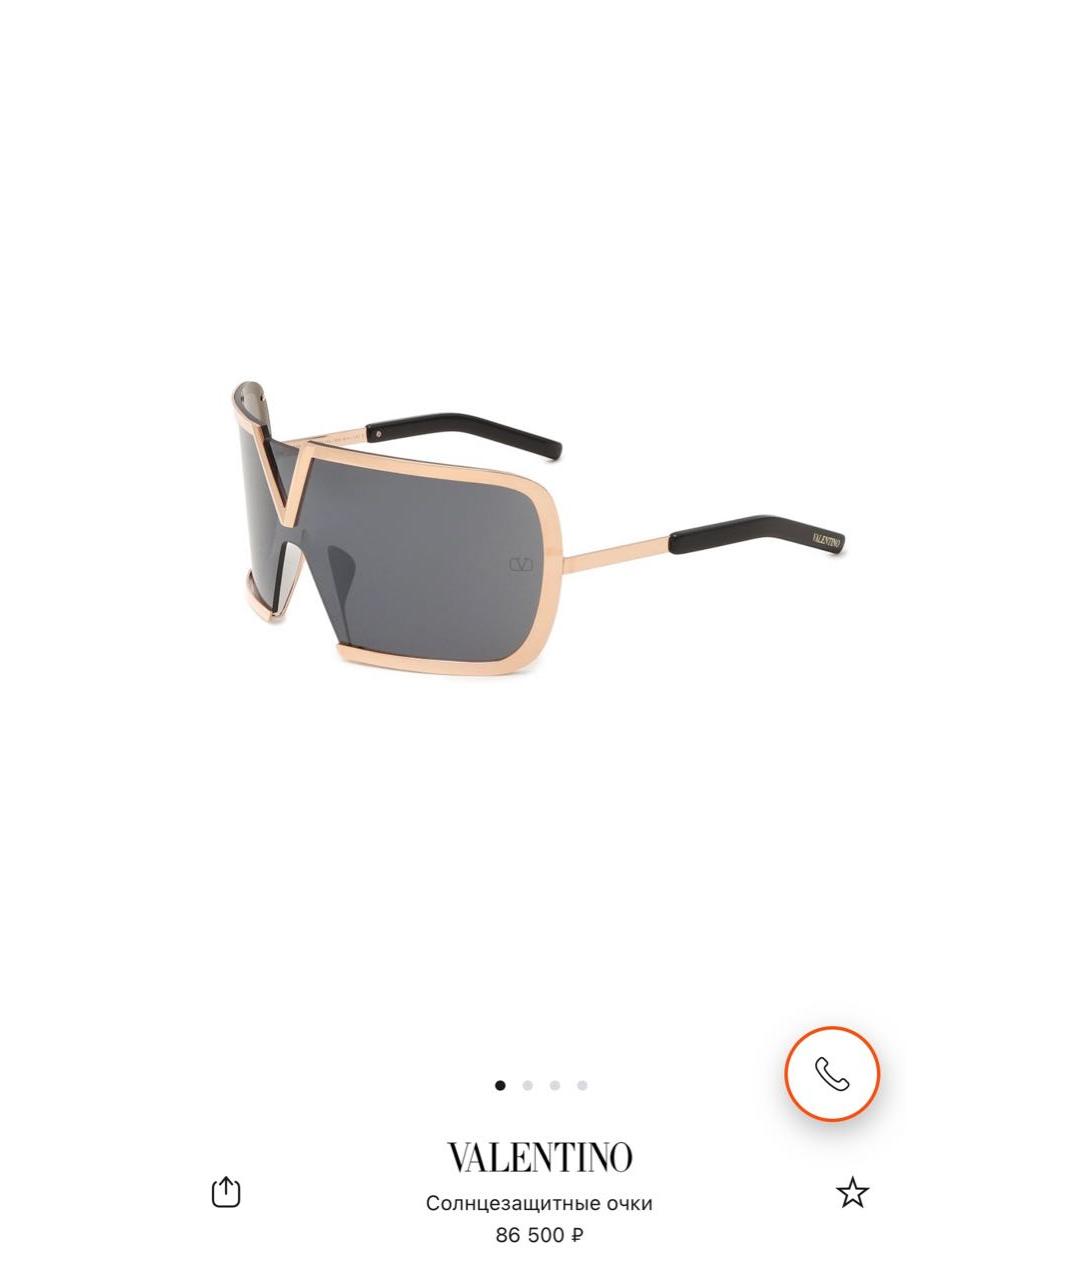 VALENTINO Золотые пластиковые солнцезащитные очки, фото 2